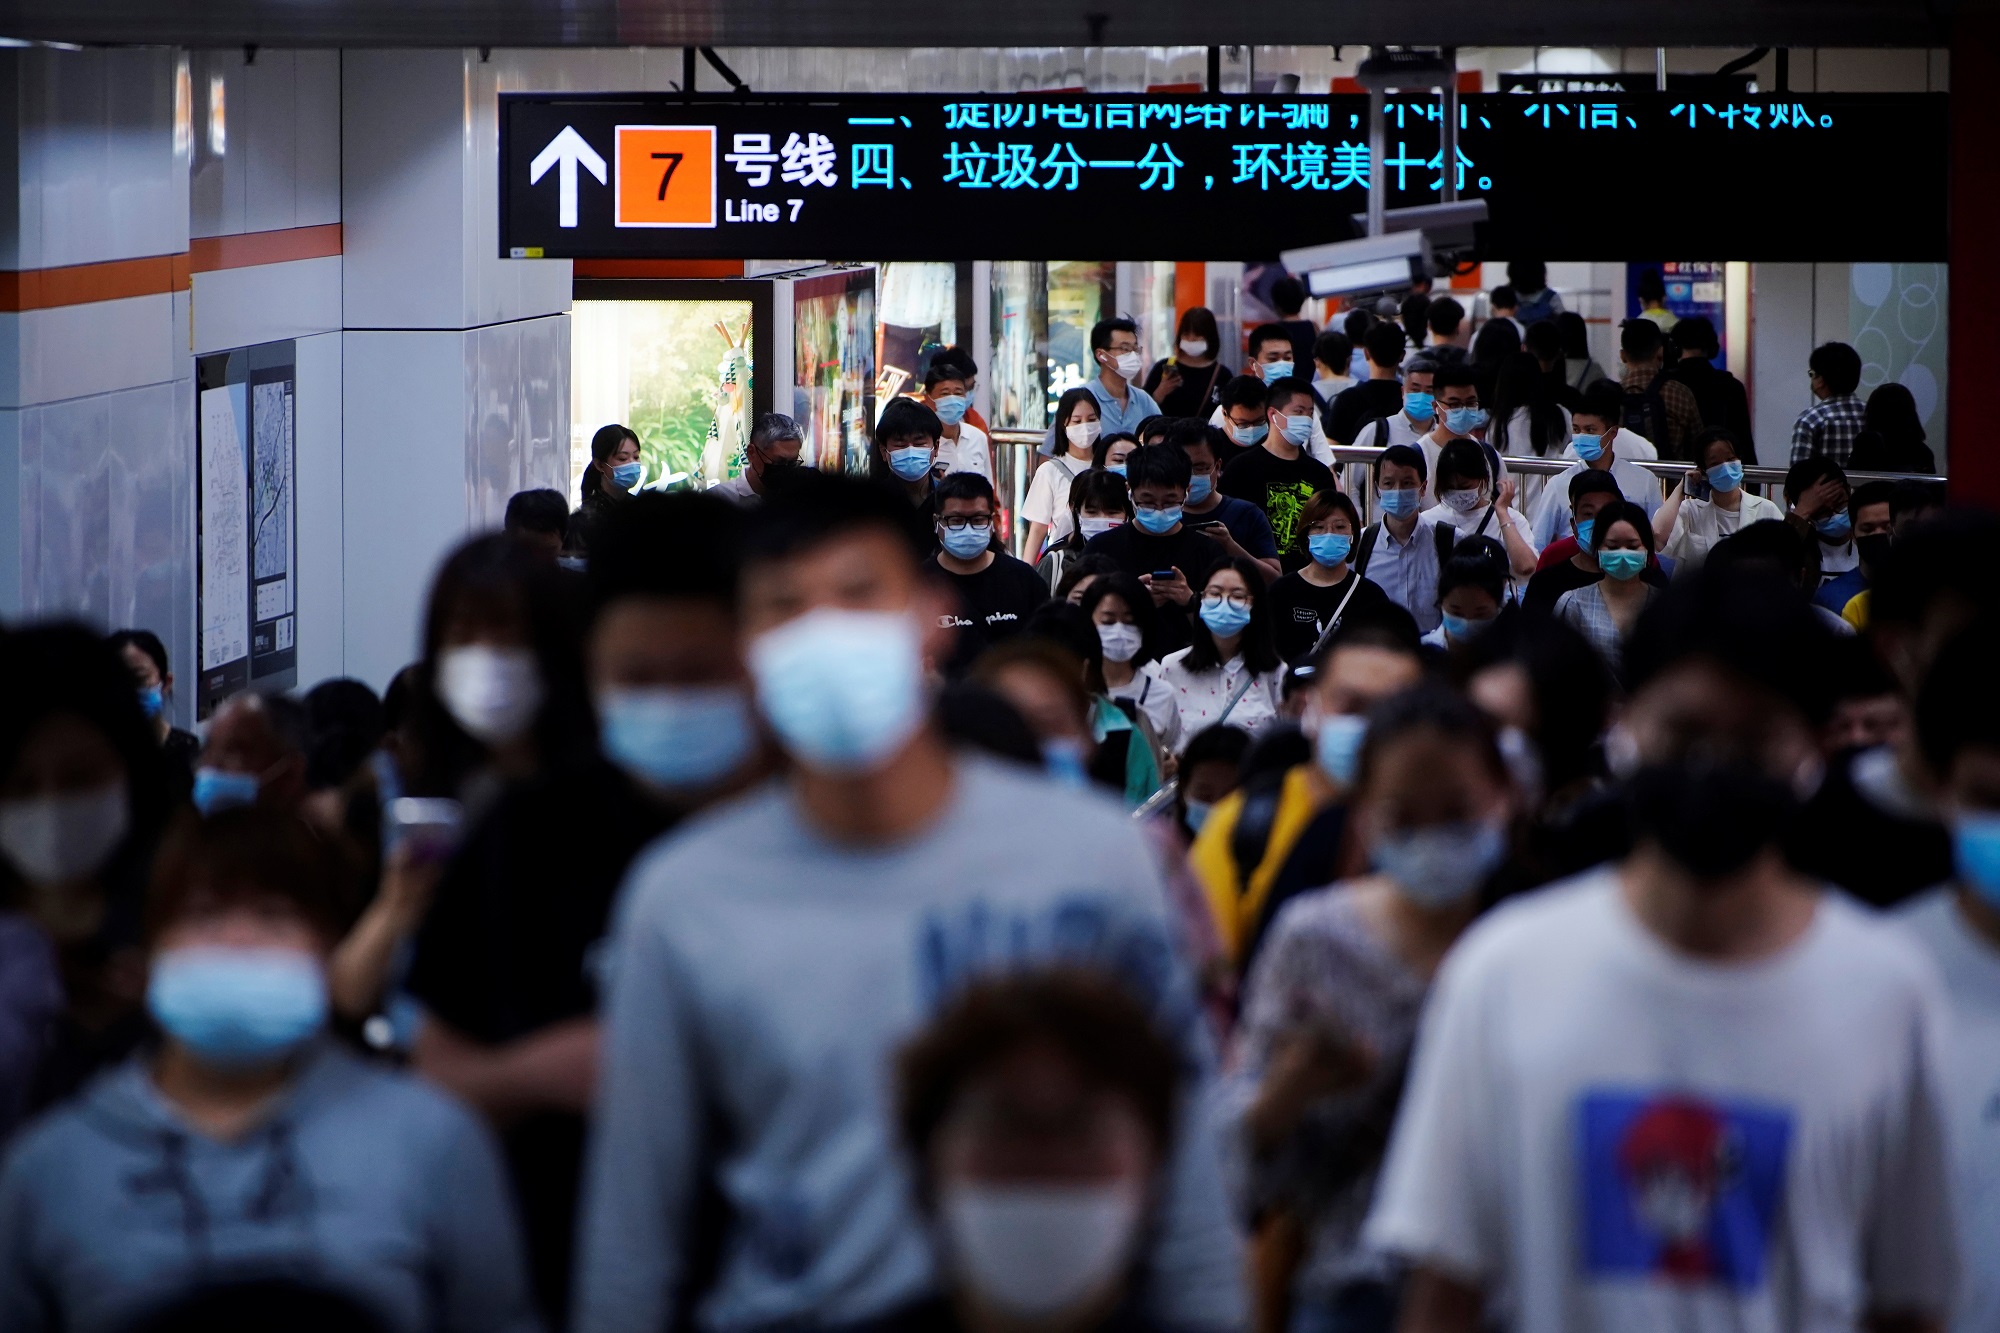 أشخاص يردتون الكمامات ويسيرون في محطة مترو أنفاق، في شنغهاي، الصين، 11 أيار/مايو 2021. (رويترز)